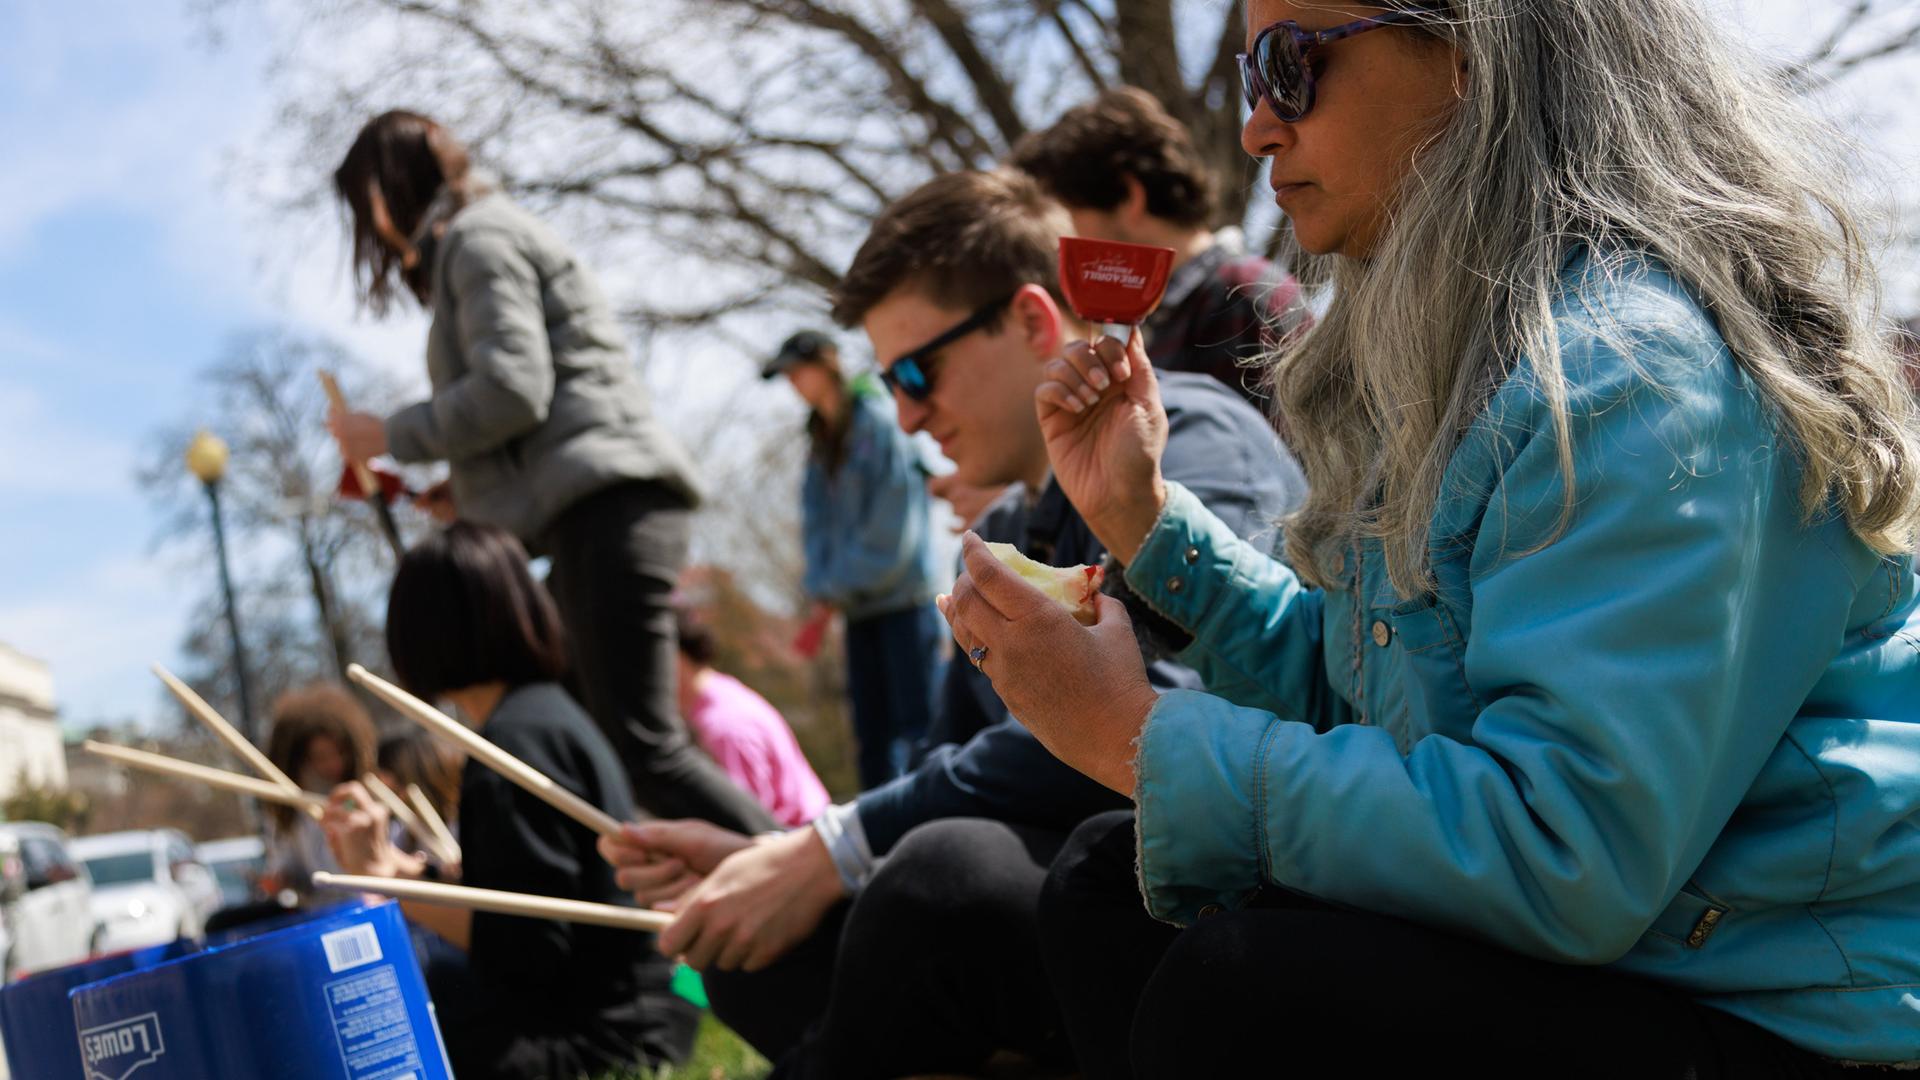 Klimaaktivisten sitzen bei einer Protestaktion auf dem Boden und trommeln auf Eimern.